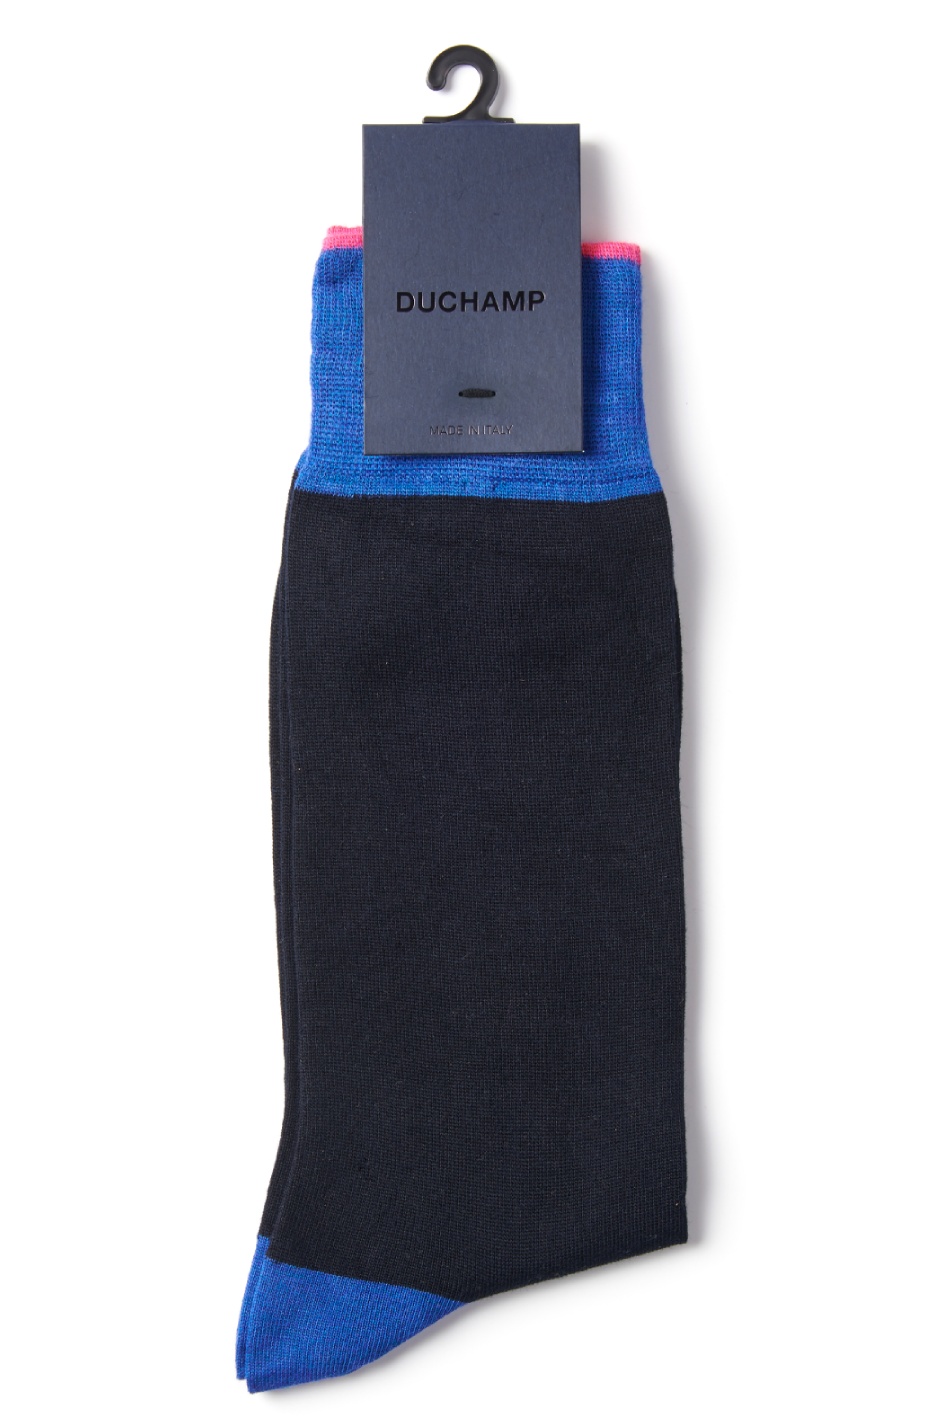 Duchamp Men's Heel Toe Sock